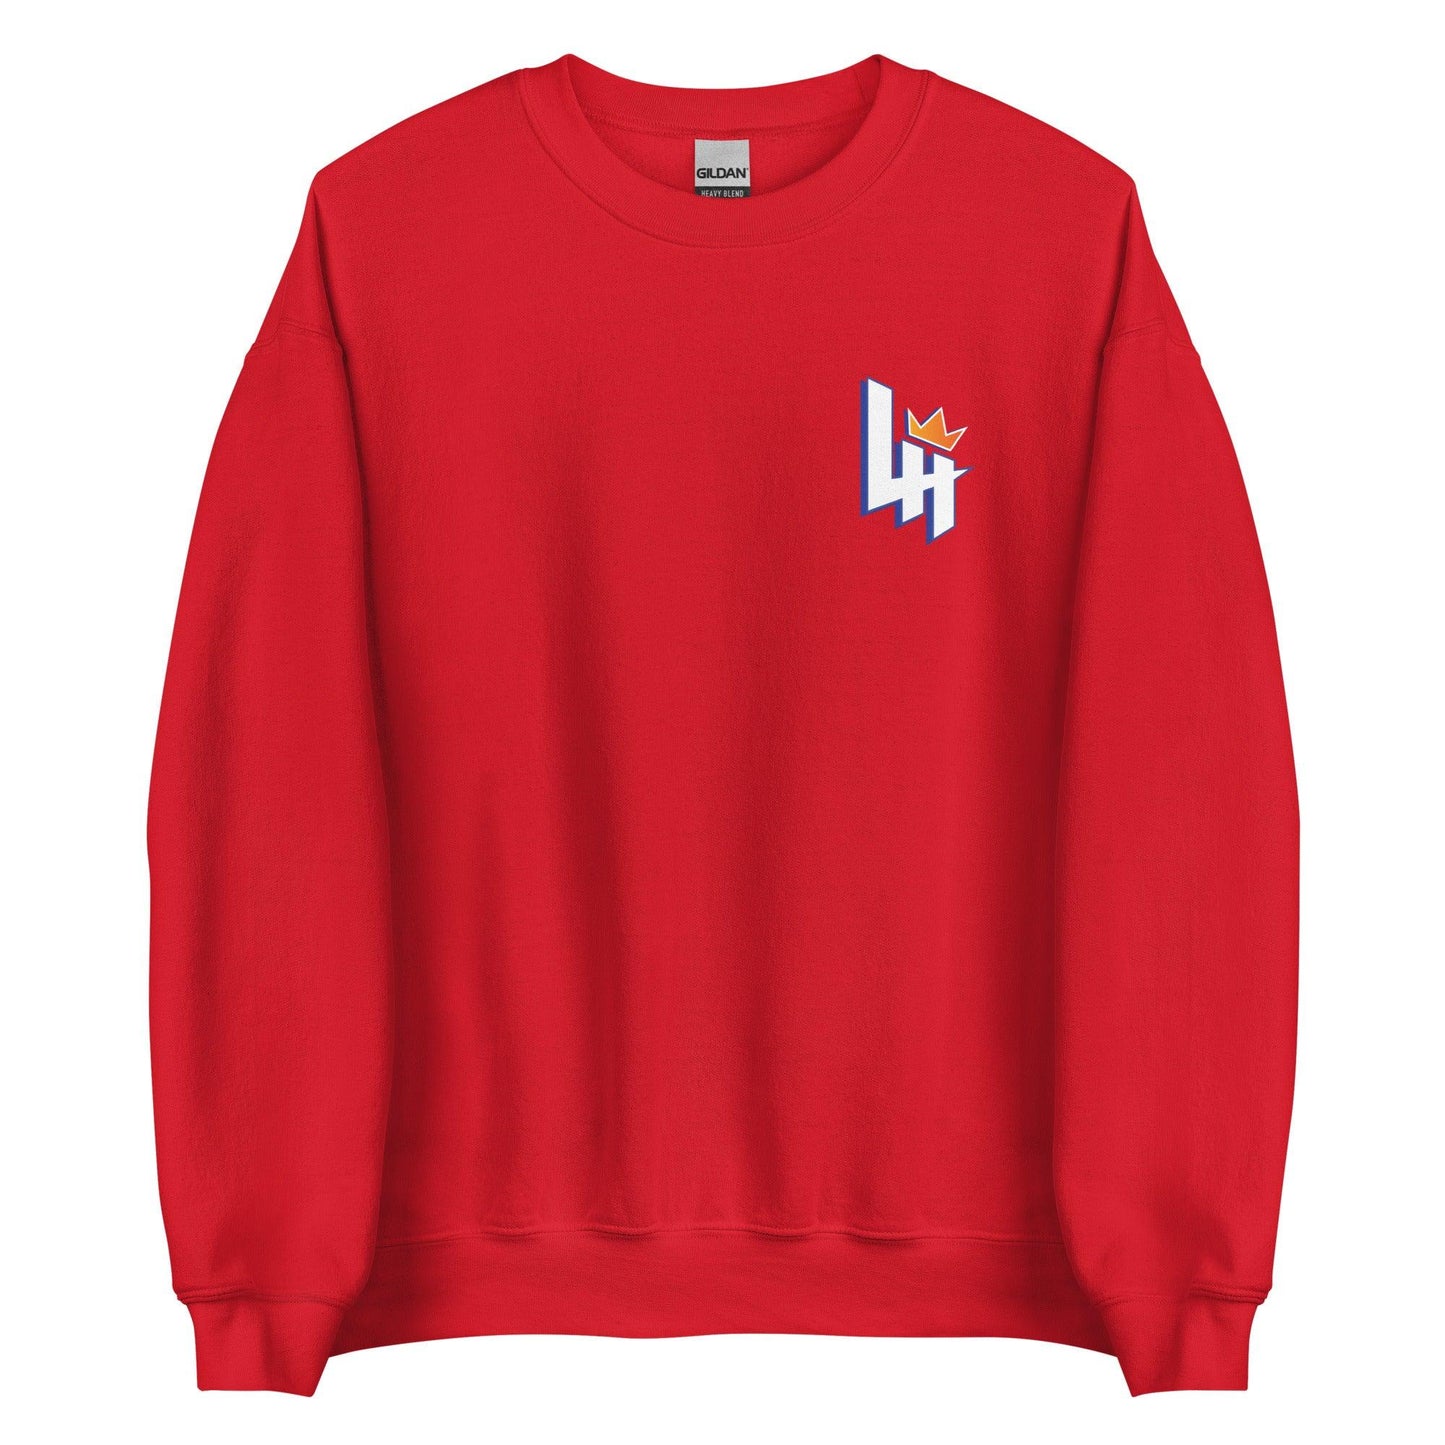 Lyndell Hudson II "Essential" Sweatshirt - Fan Arch